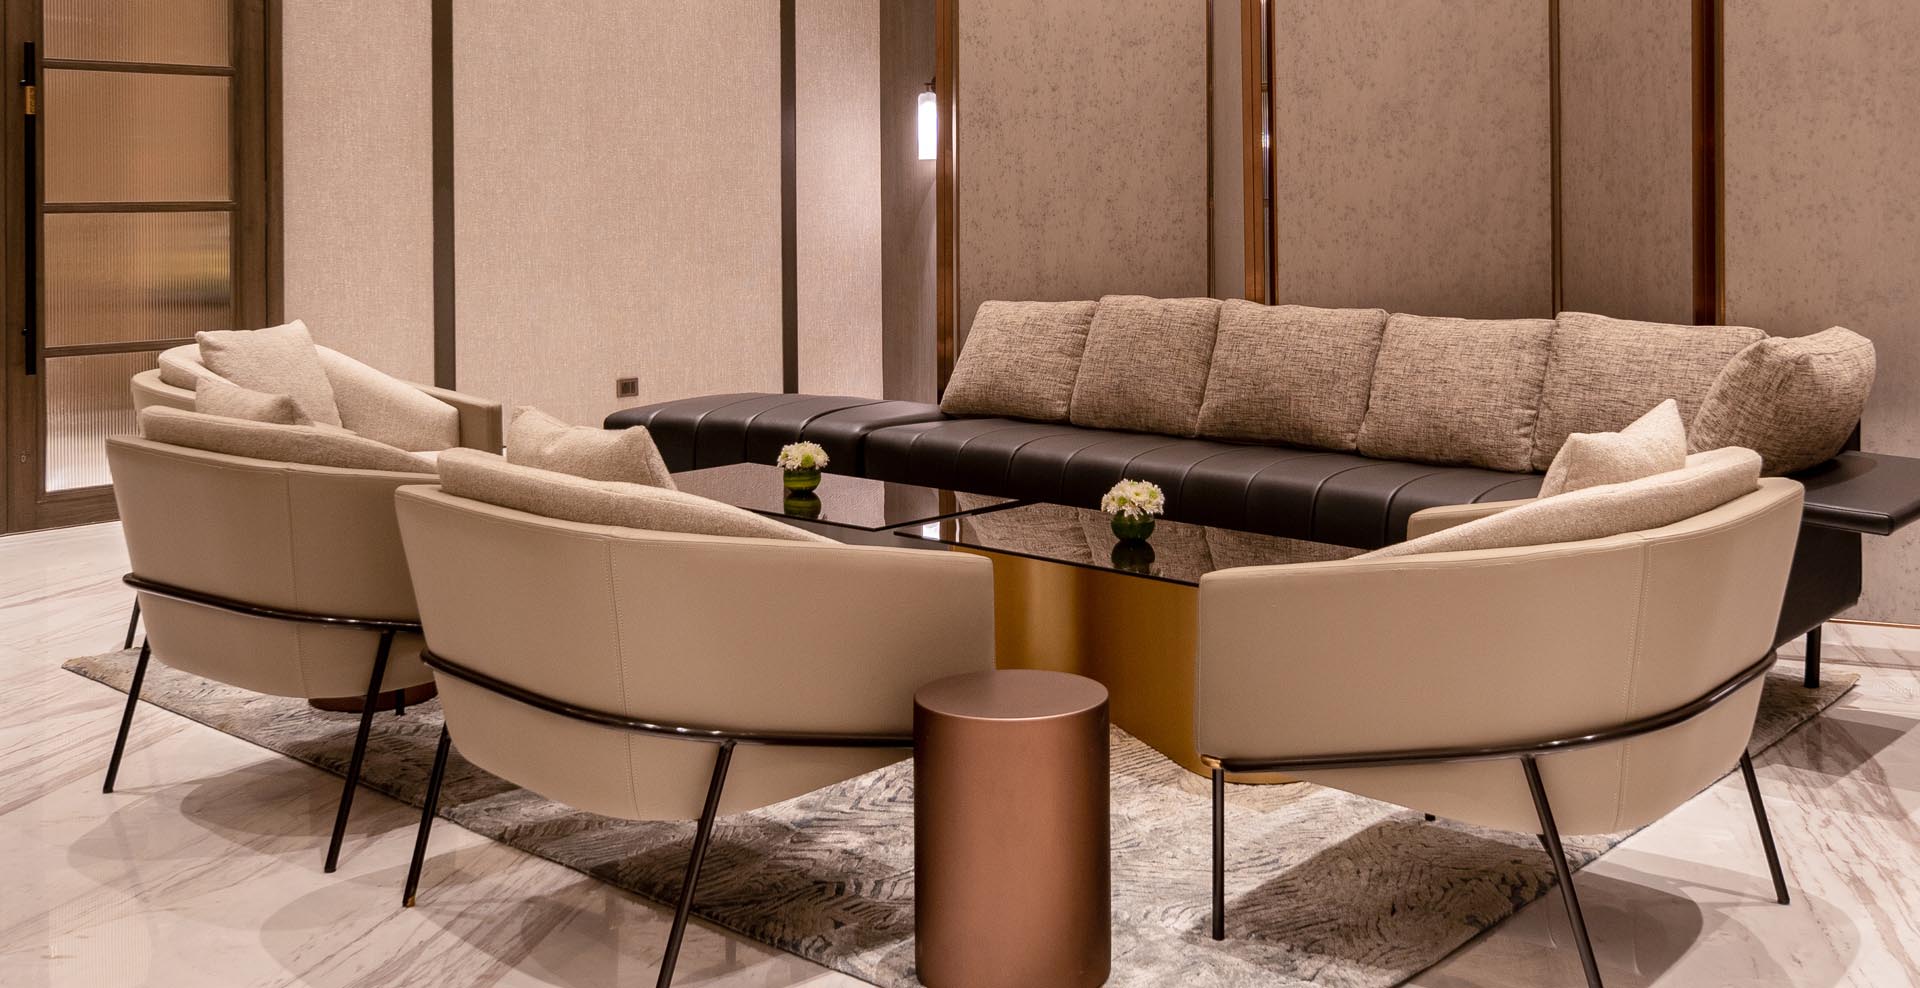 Elegant meeting room